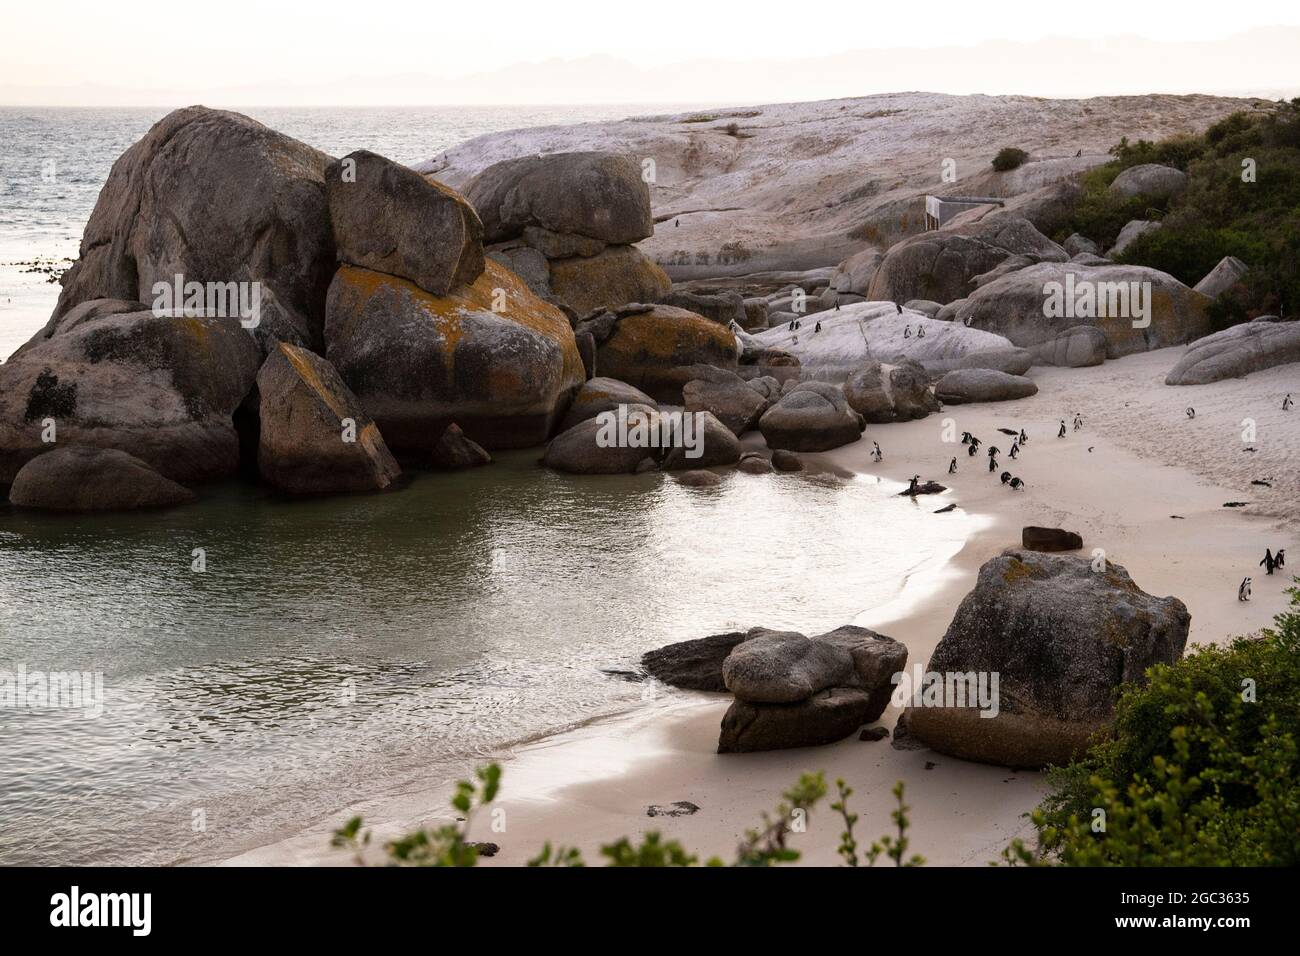 La playa Boulders, Península del Cabo, Sudáfrica Foto de stock